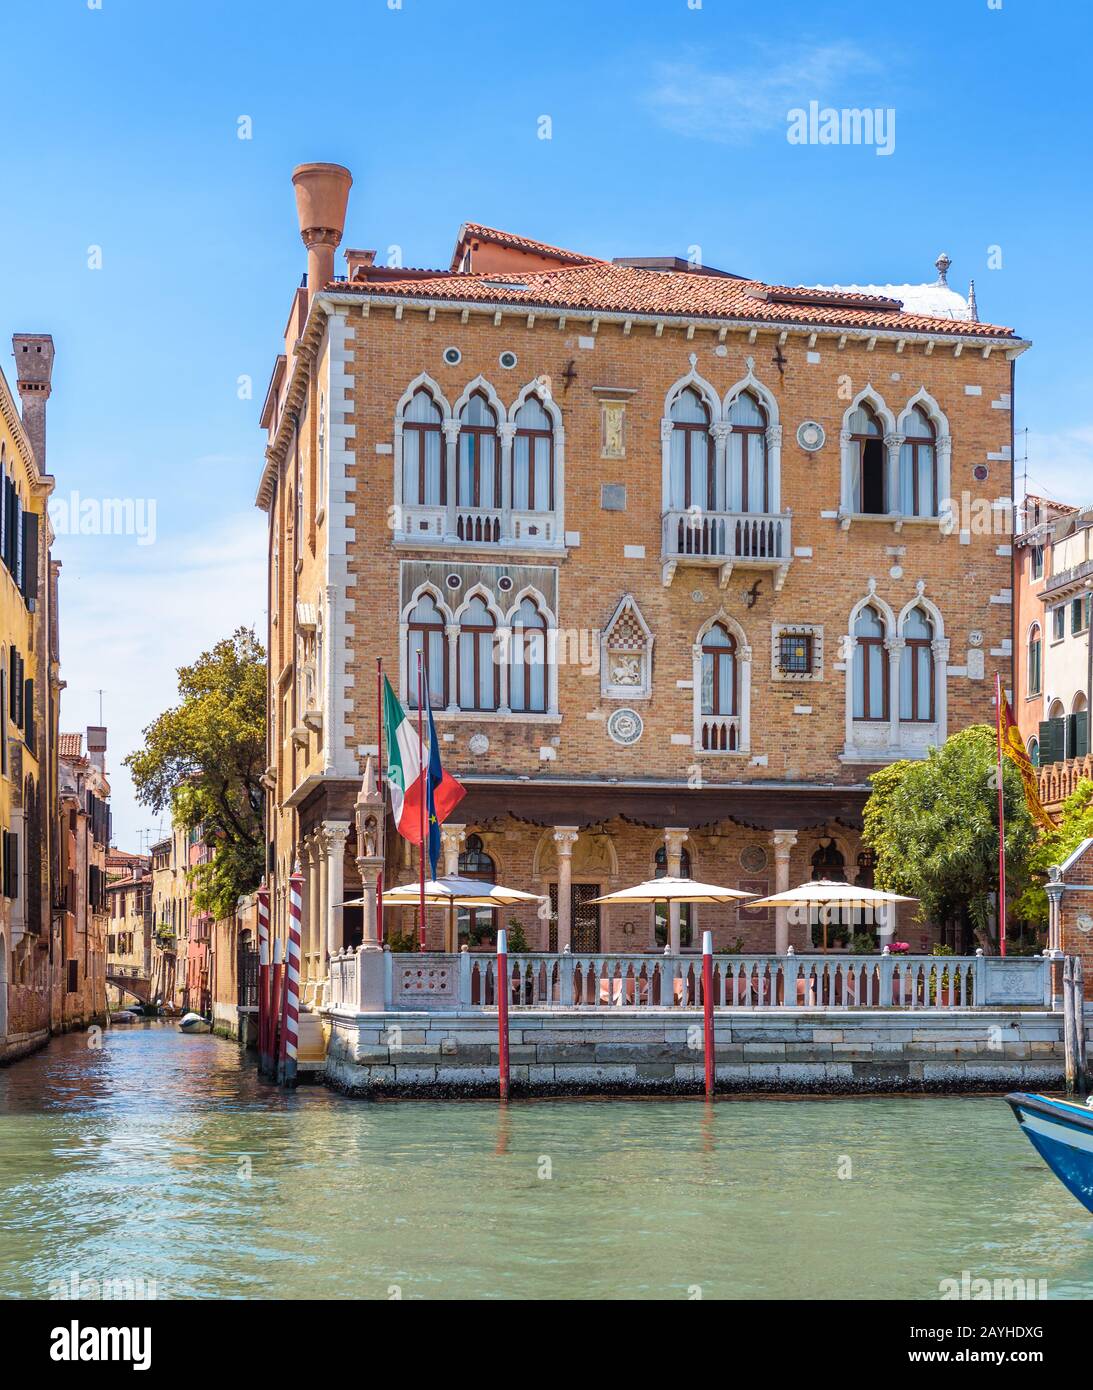 Stadtbild von Venedig, Italien. Vintage-Hotel oder Wohnhaus im Sommer Venedig. Altes Haus wie ein Palast am Canal Grande. Schöne Architektur Stockfoto